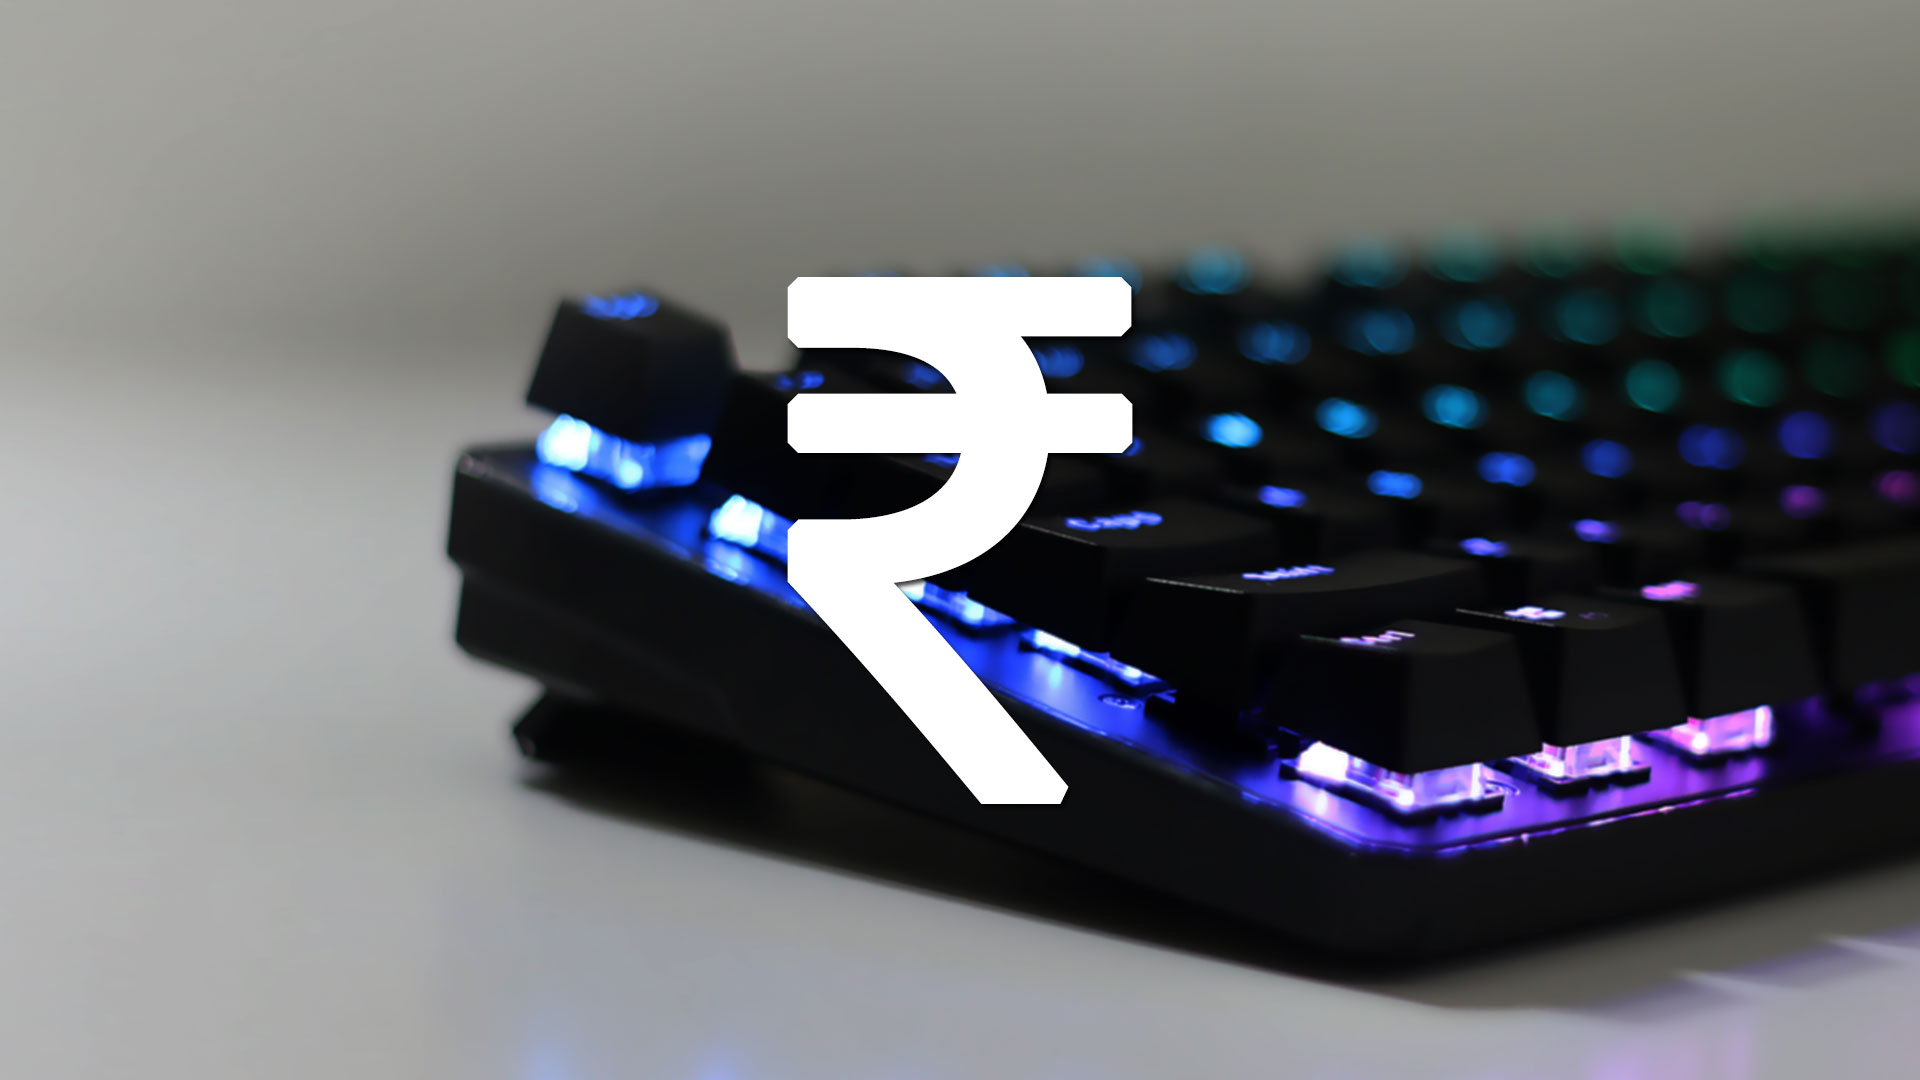 Rupee "₹" Symbol